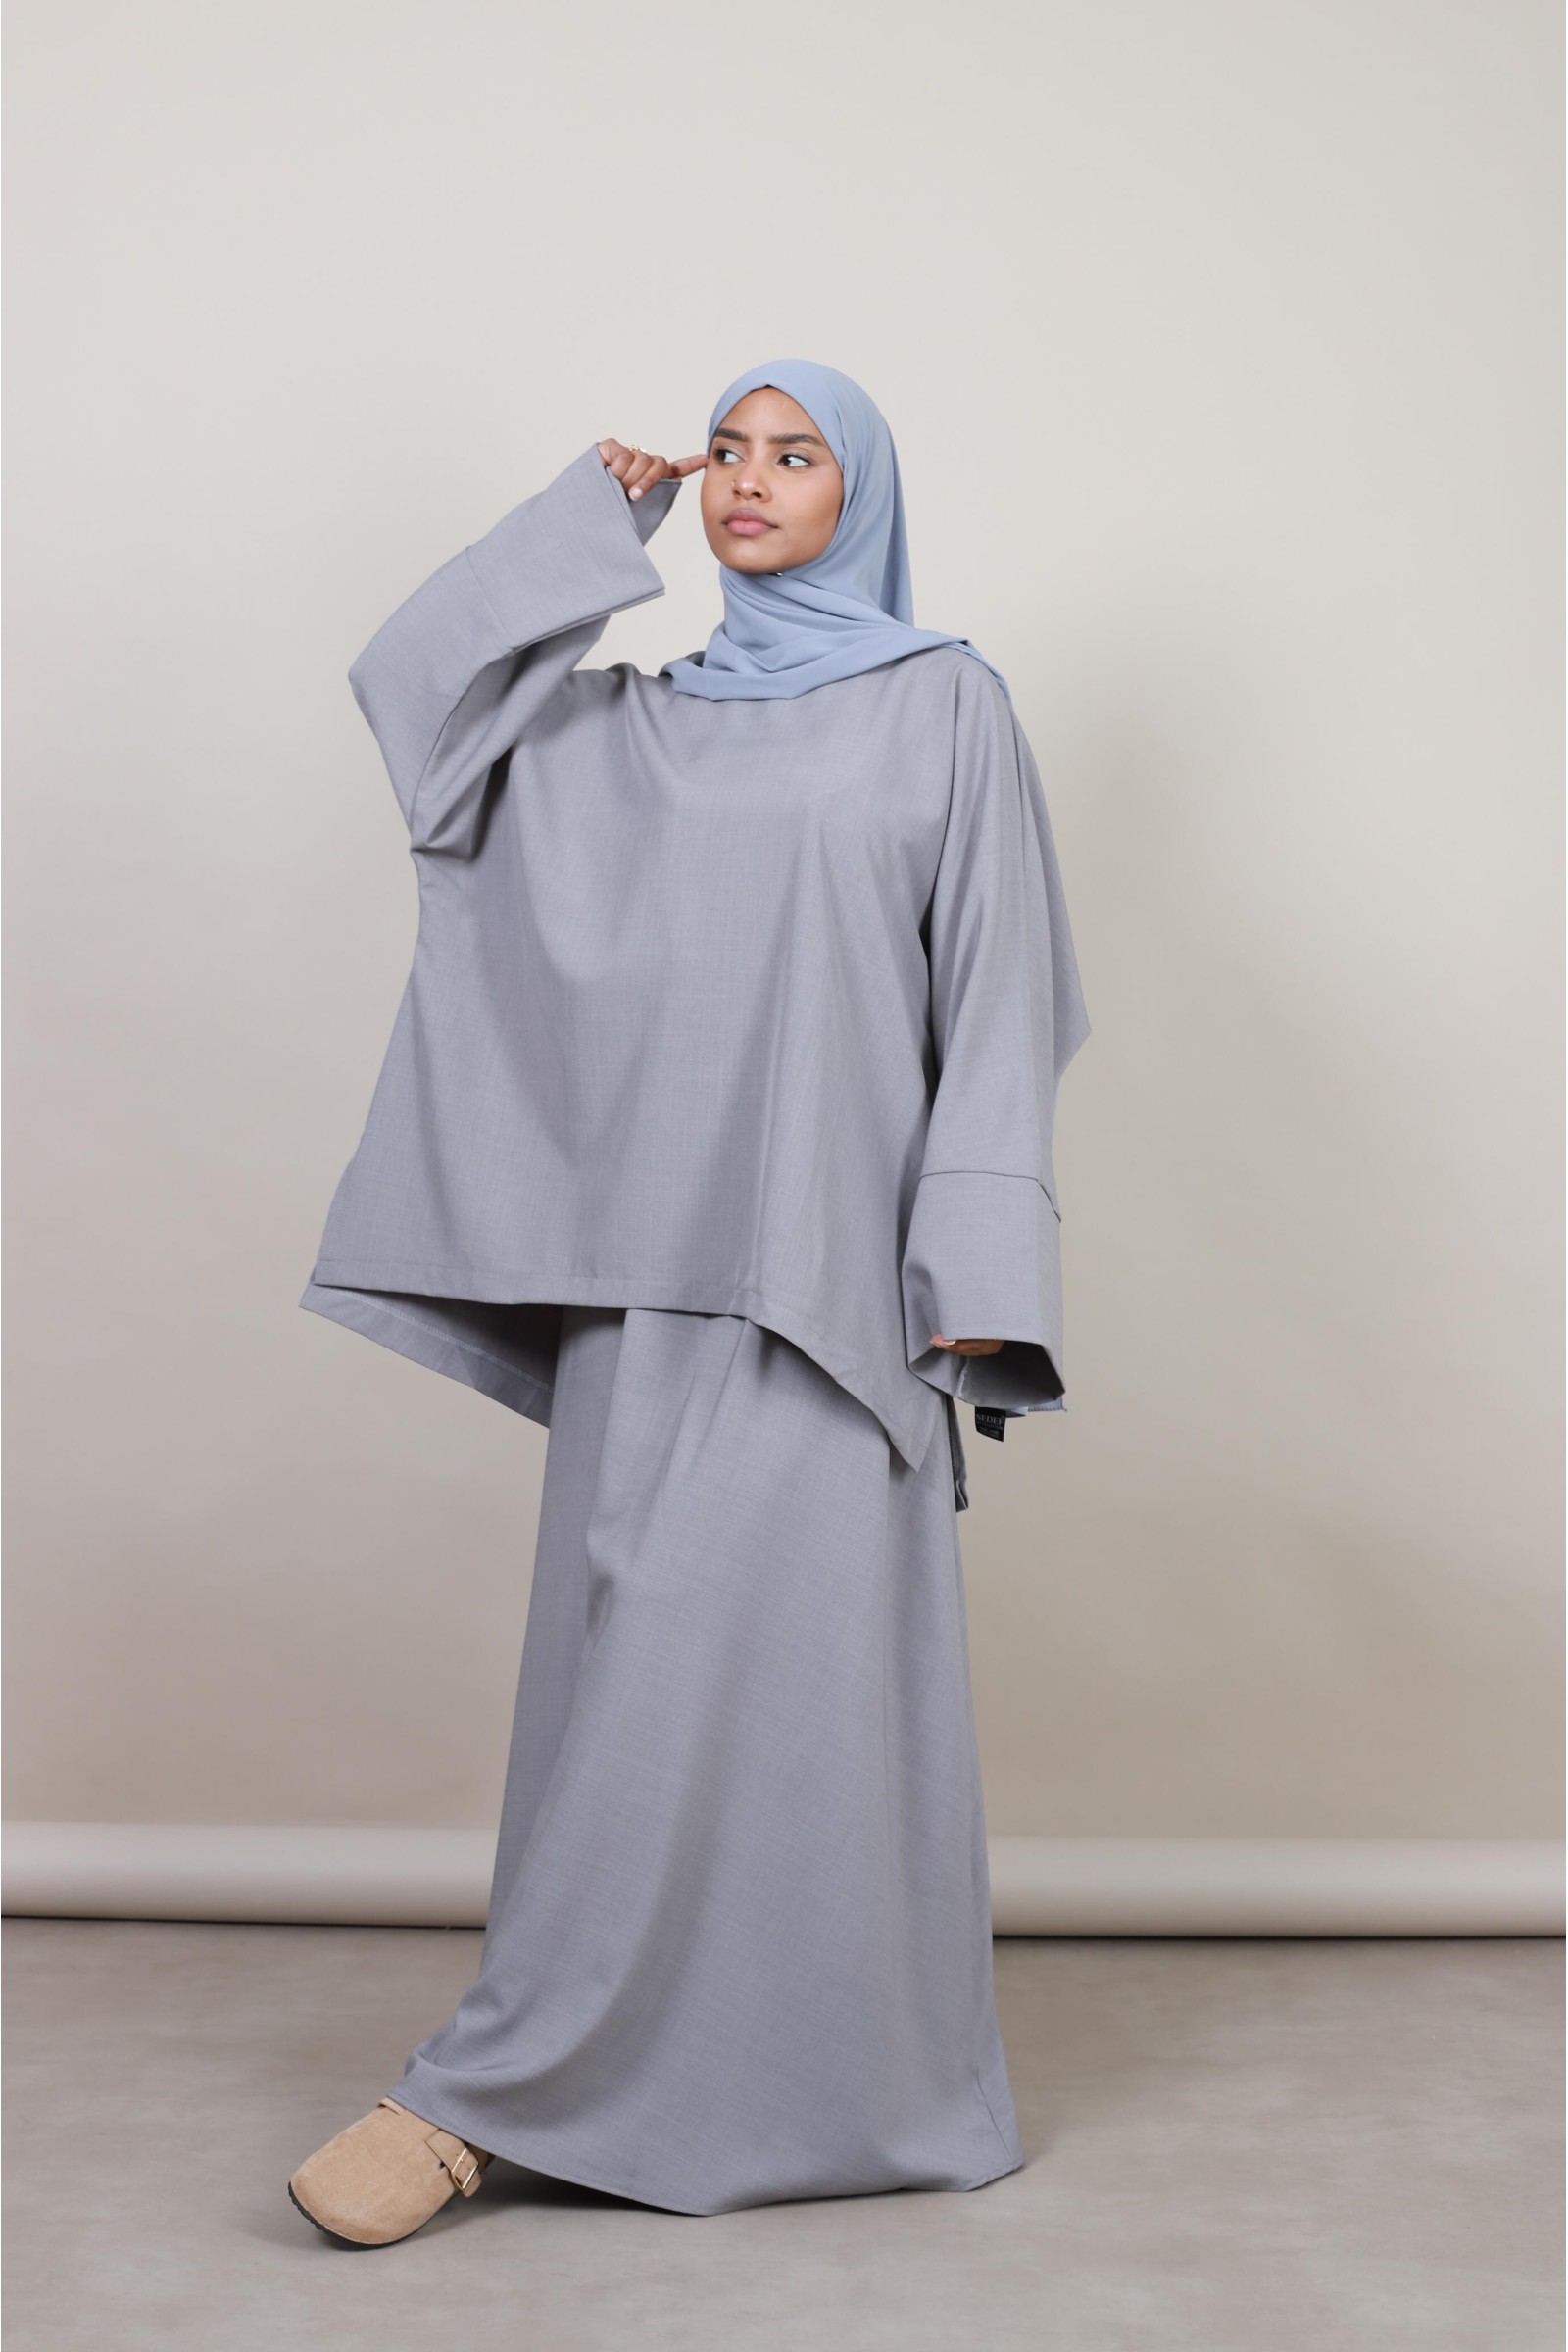 Ensemble modeste fashion hijab femme musulmane